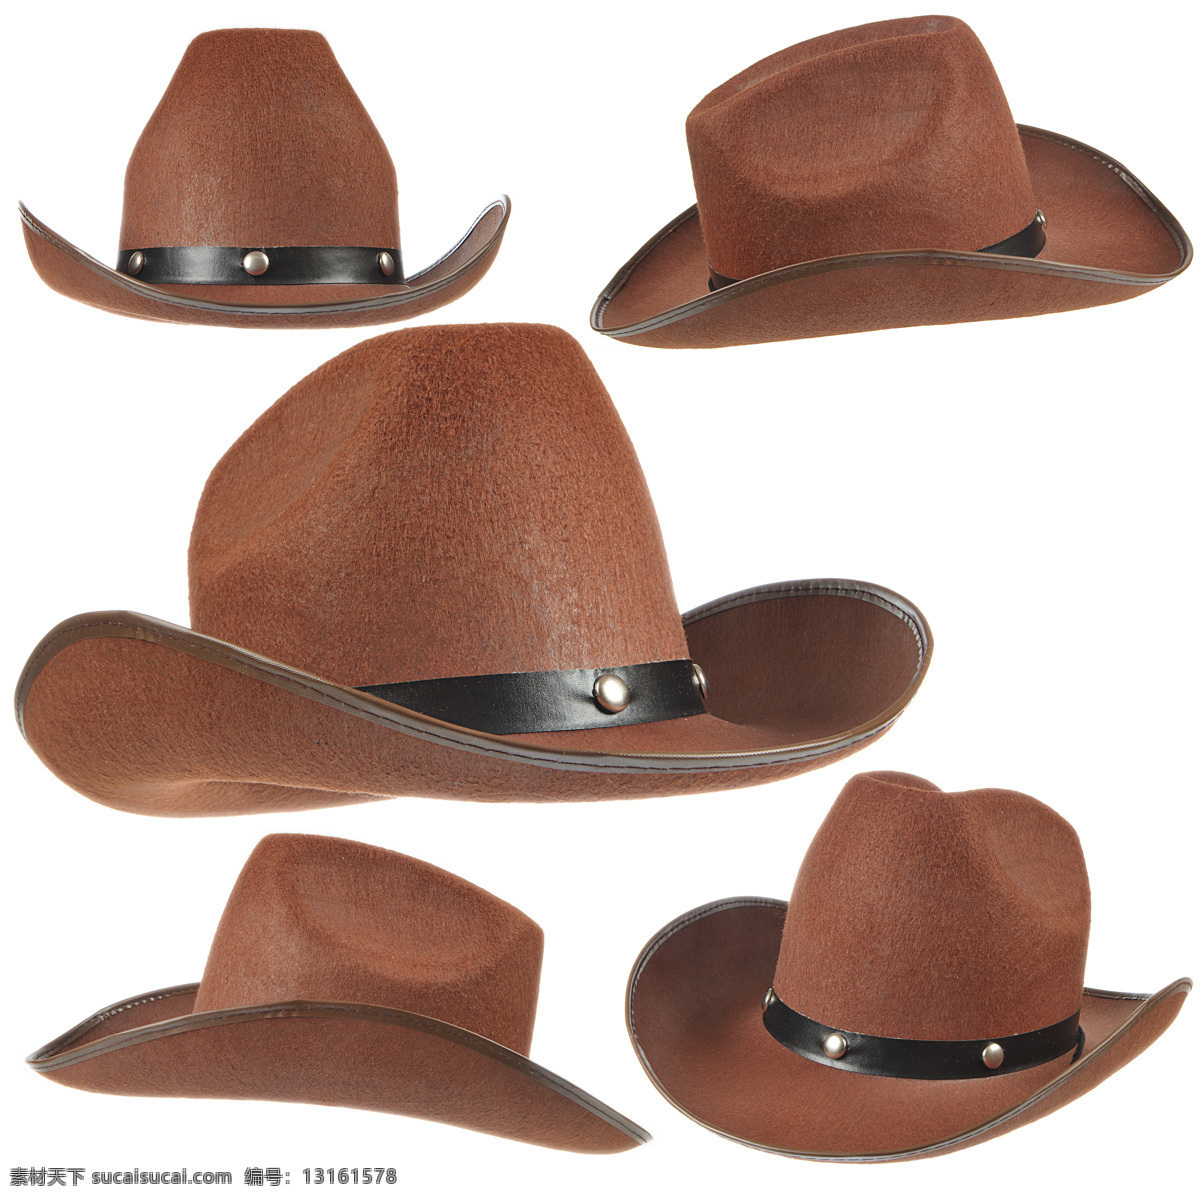 角度 展示 牛仔 帽 帽子 牛仔帽 棕色 毛呢 西部牛仔 美国西部牛仔 其他类别 生活百科 白色